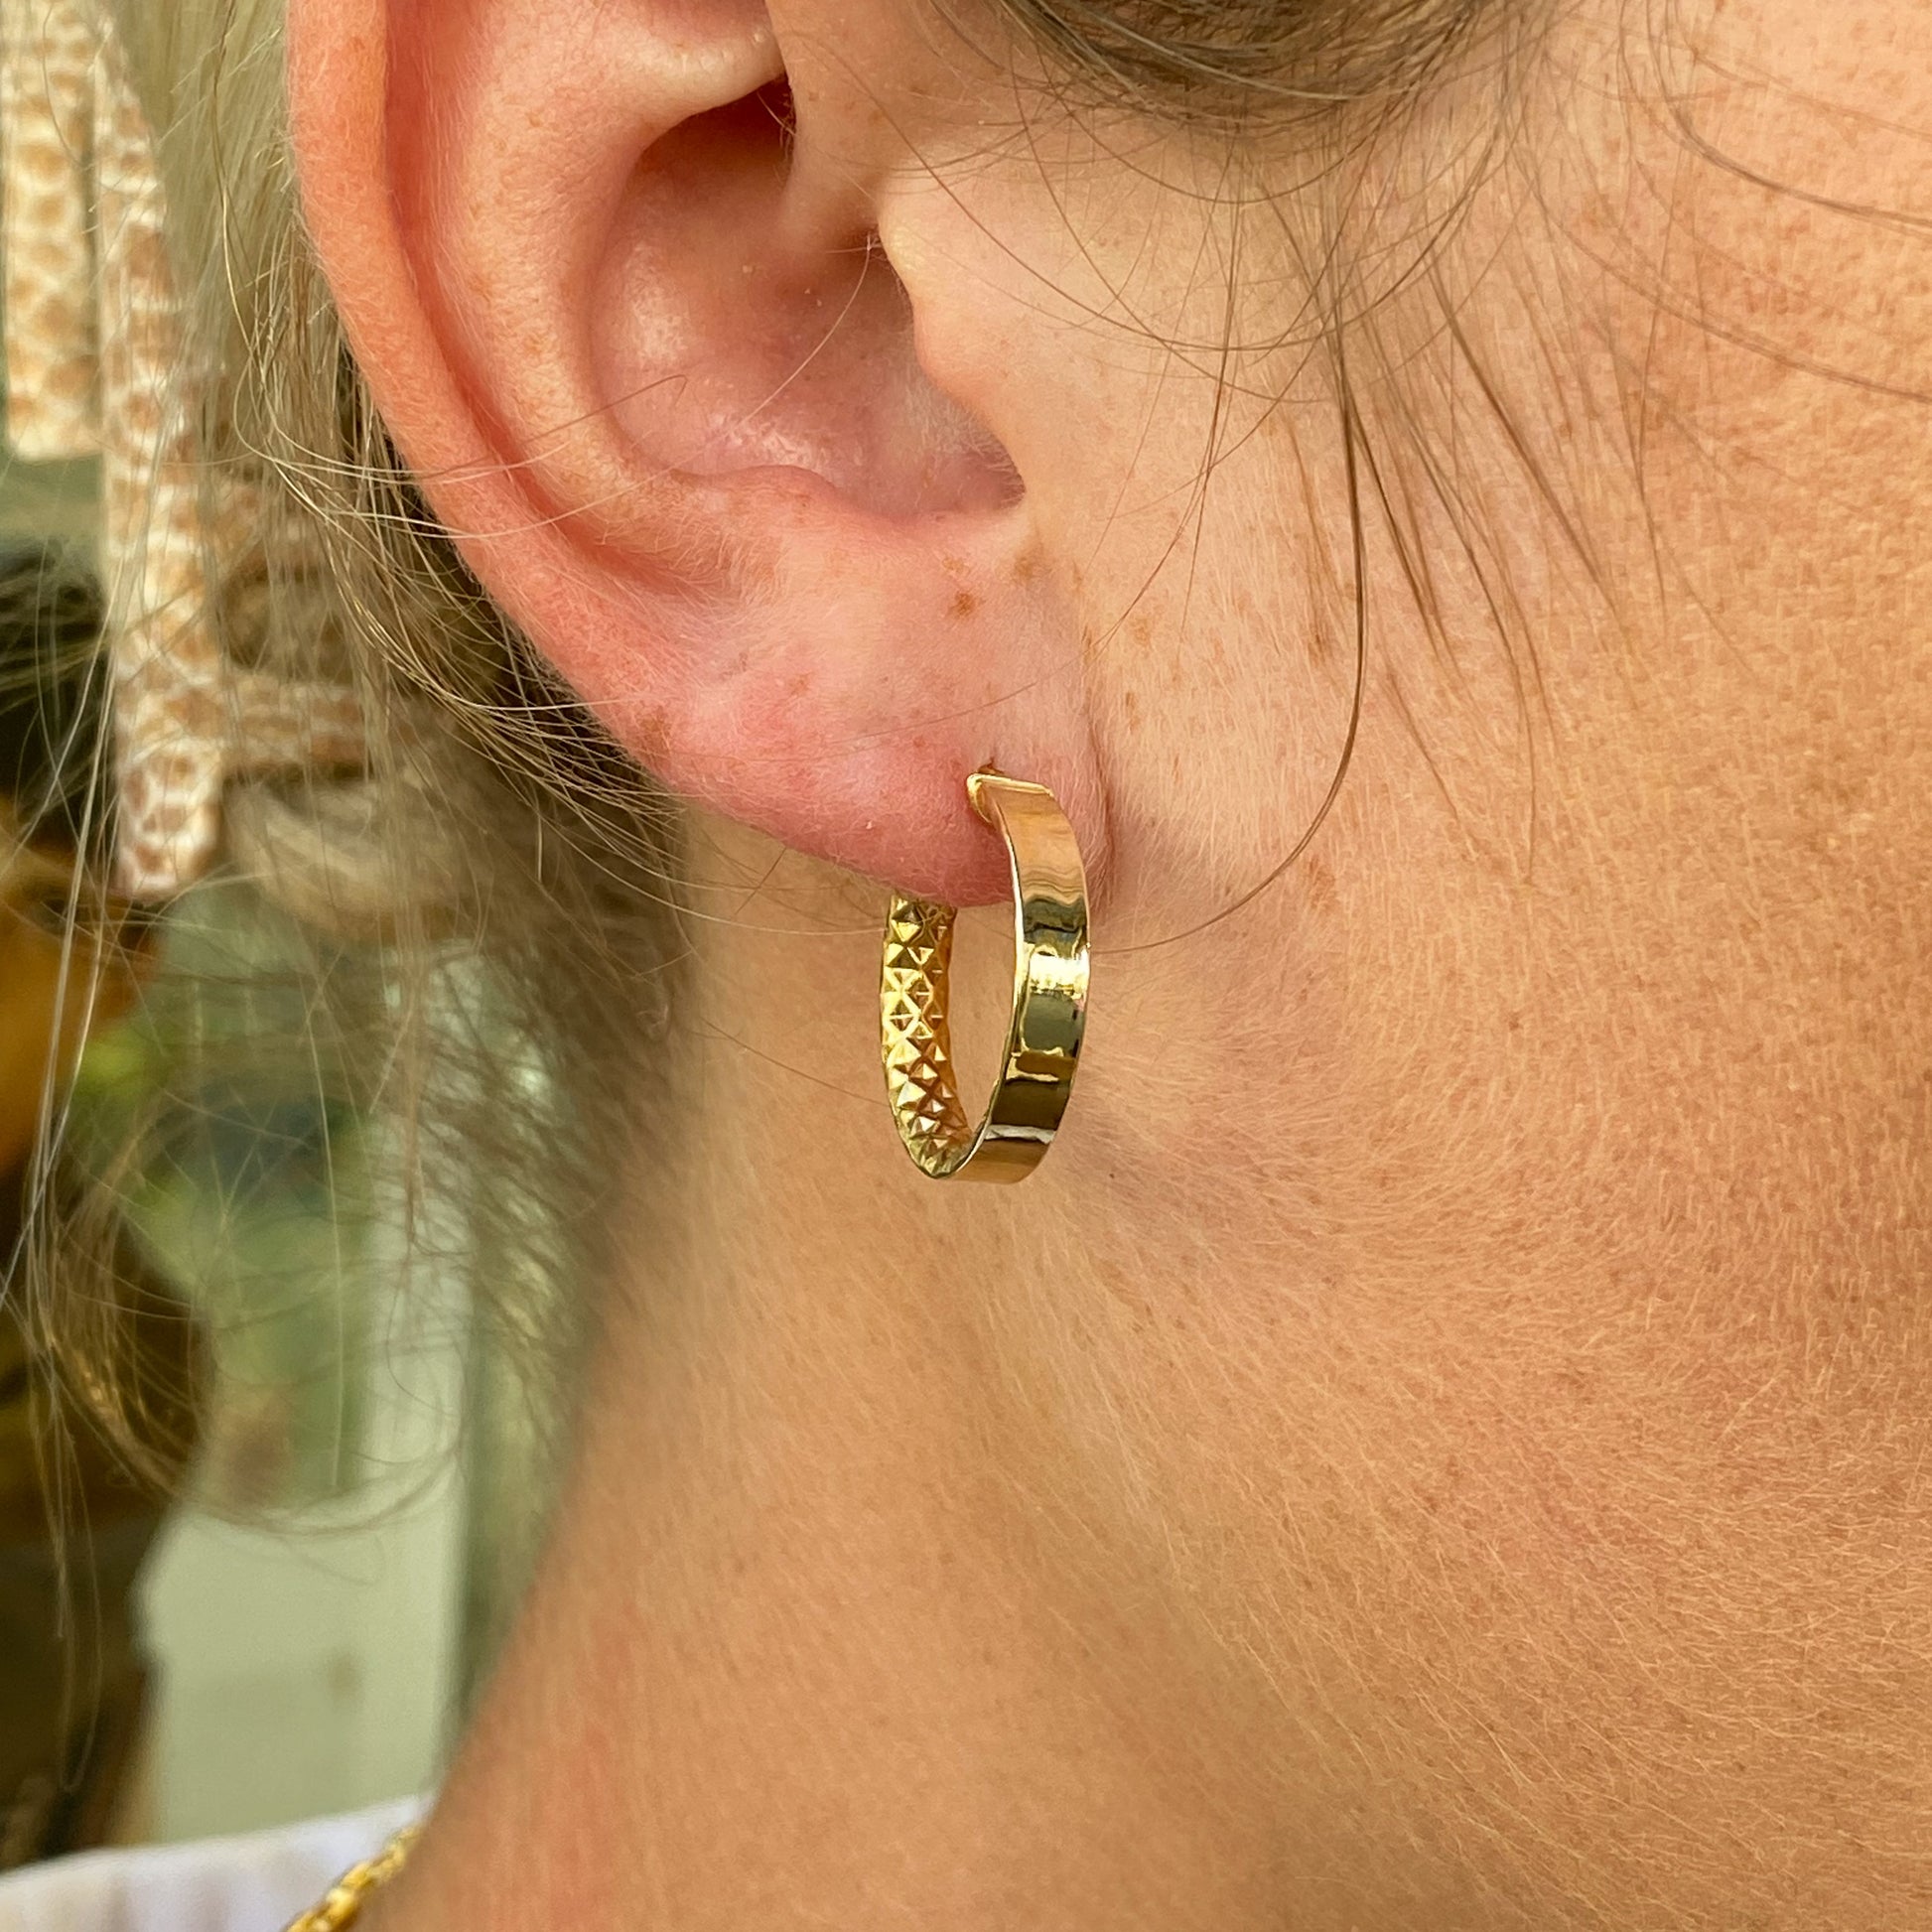 9ct Gold Diamond Cut Inside Hoop Earrings | 18mm - John Ross Jewellers